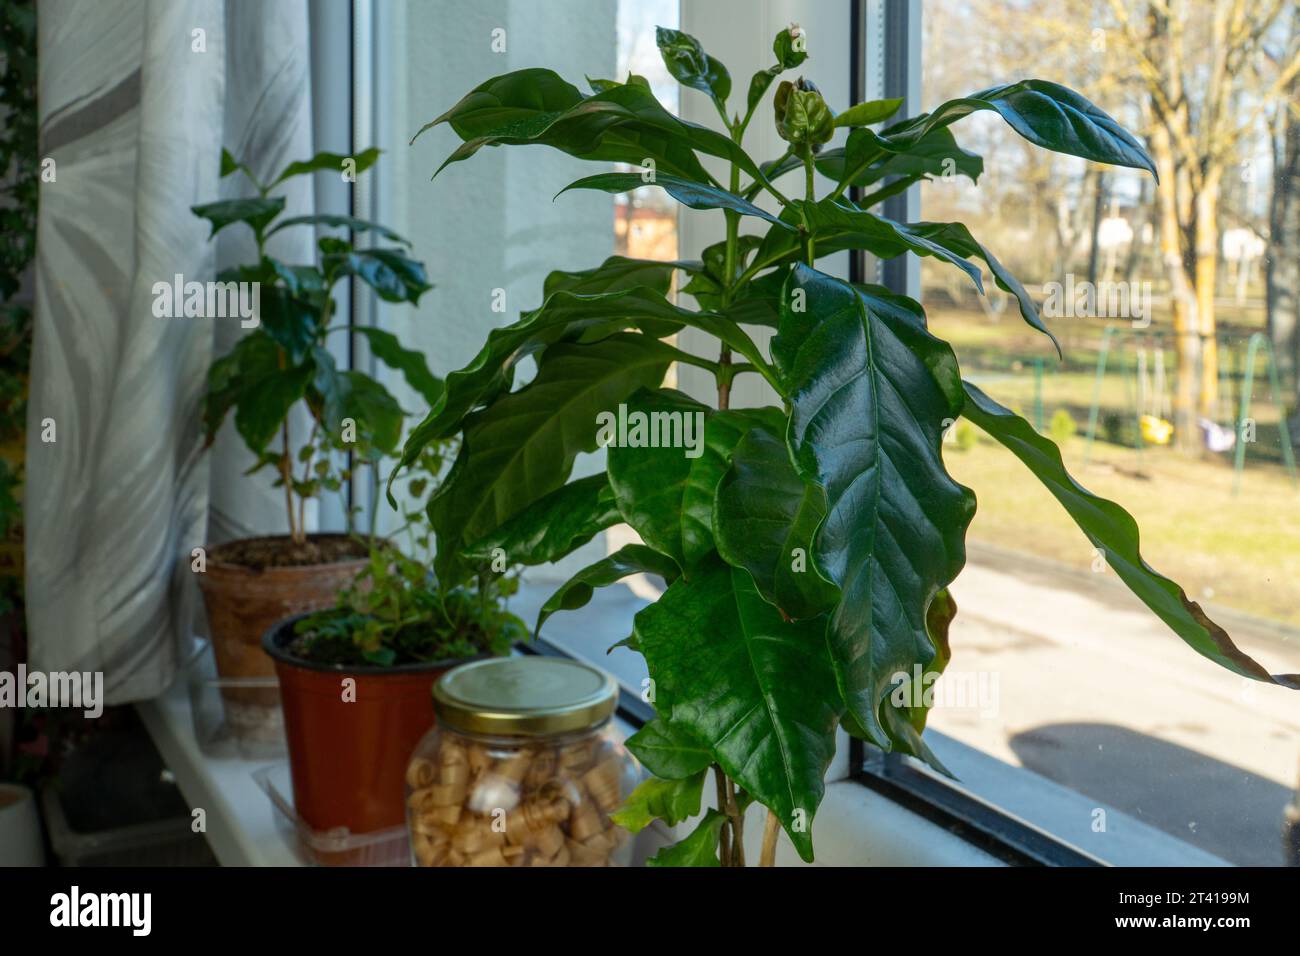 Zimmerpflanzen auf der Fensterbank: Ein Coffee Tree zu Hause wachsen. Nahaufnahme der üppigen grünen Blätter des Coffee Tree. Stockfoto